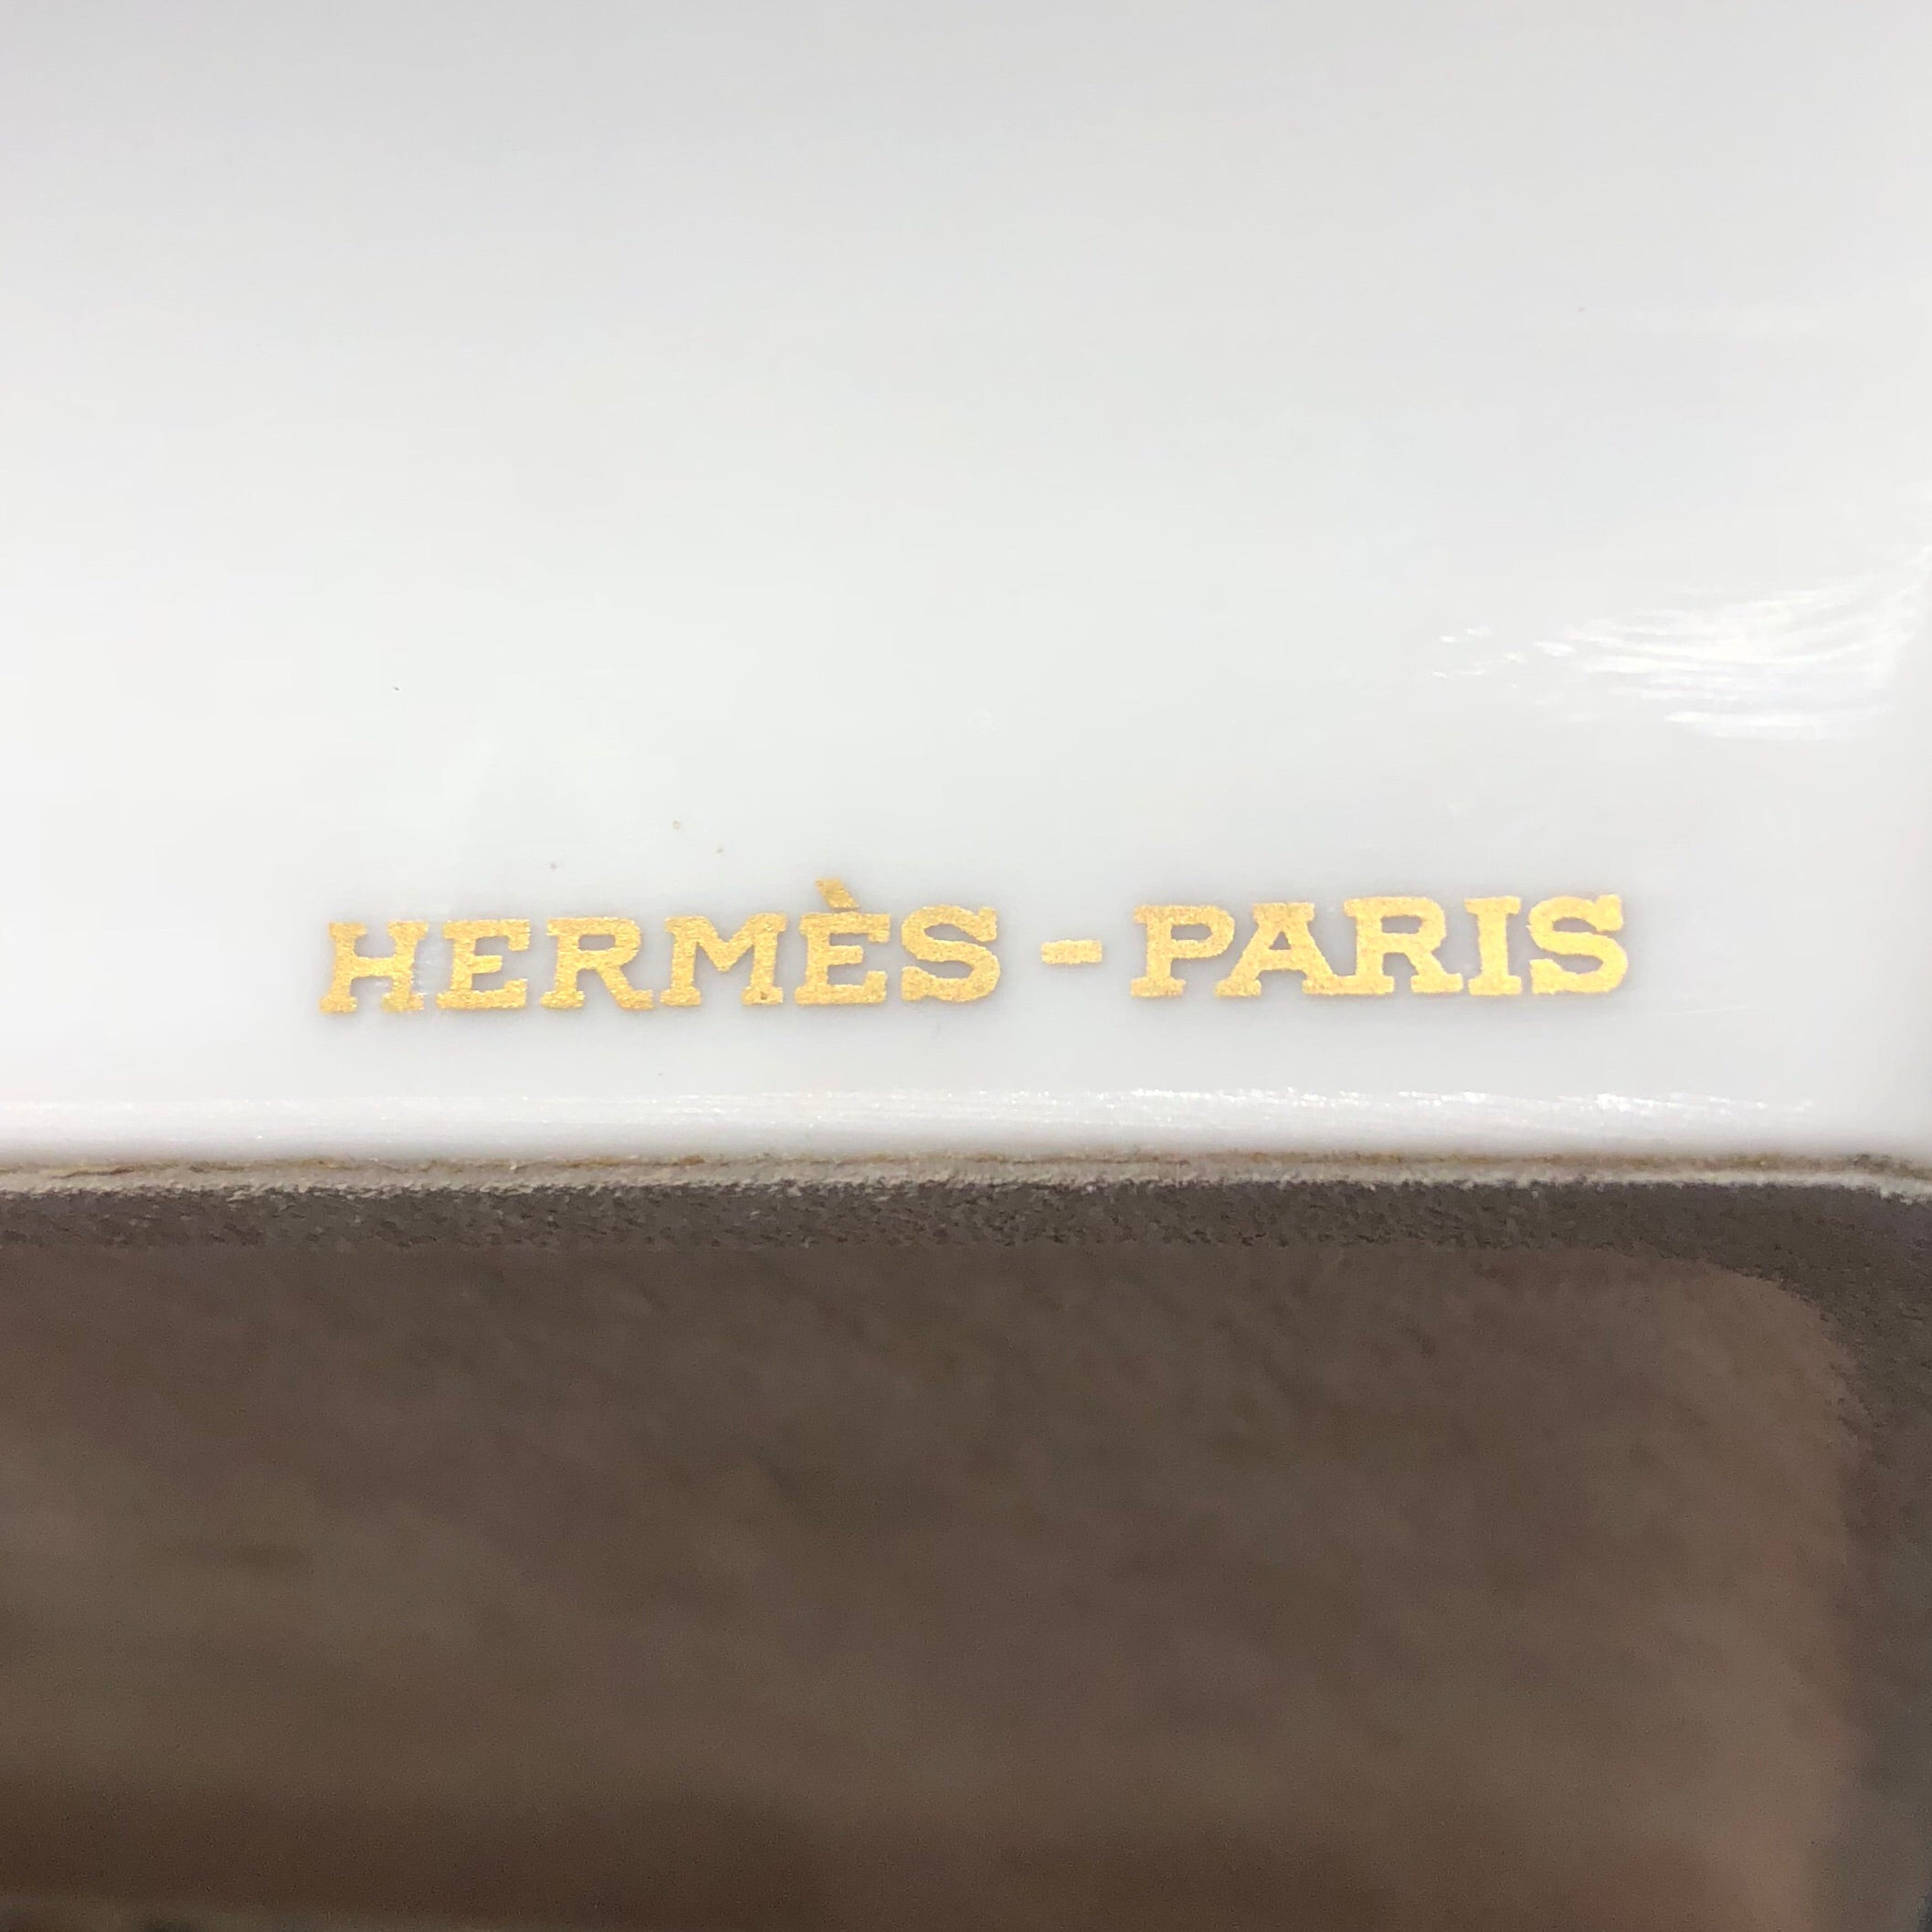 Hermès striped ashtray